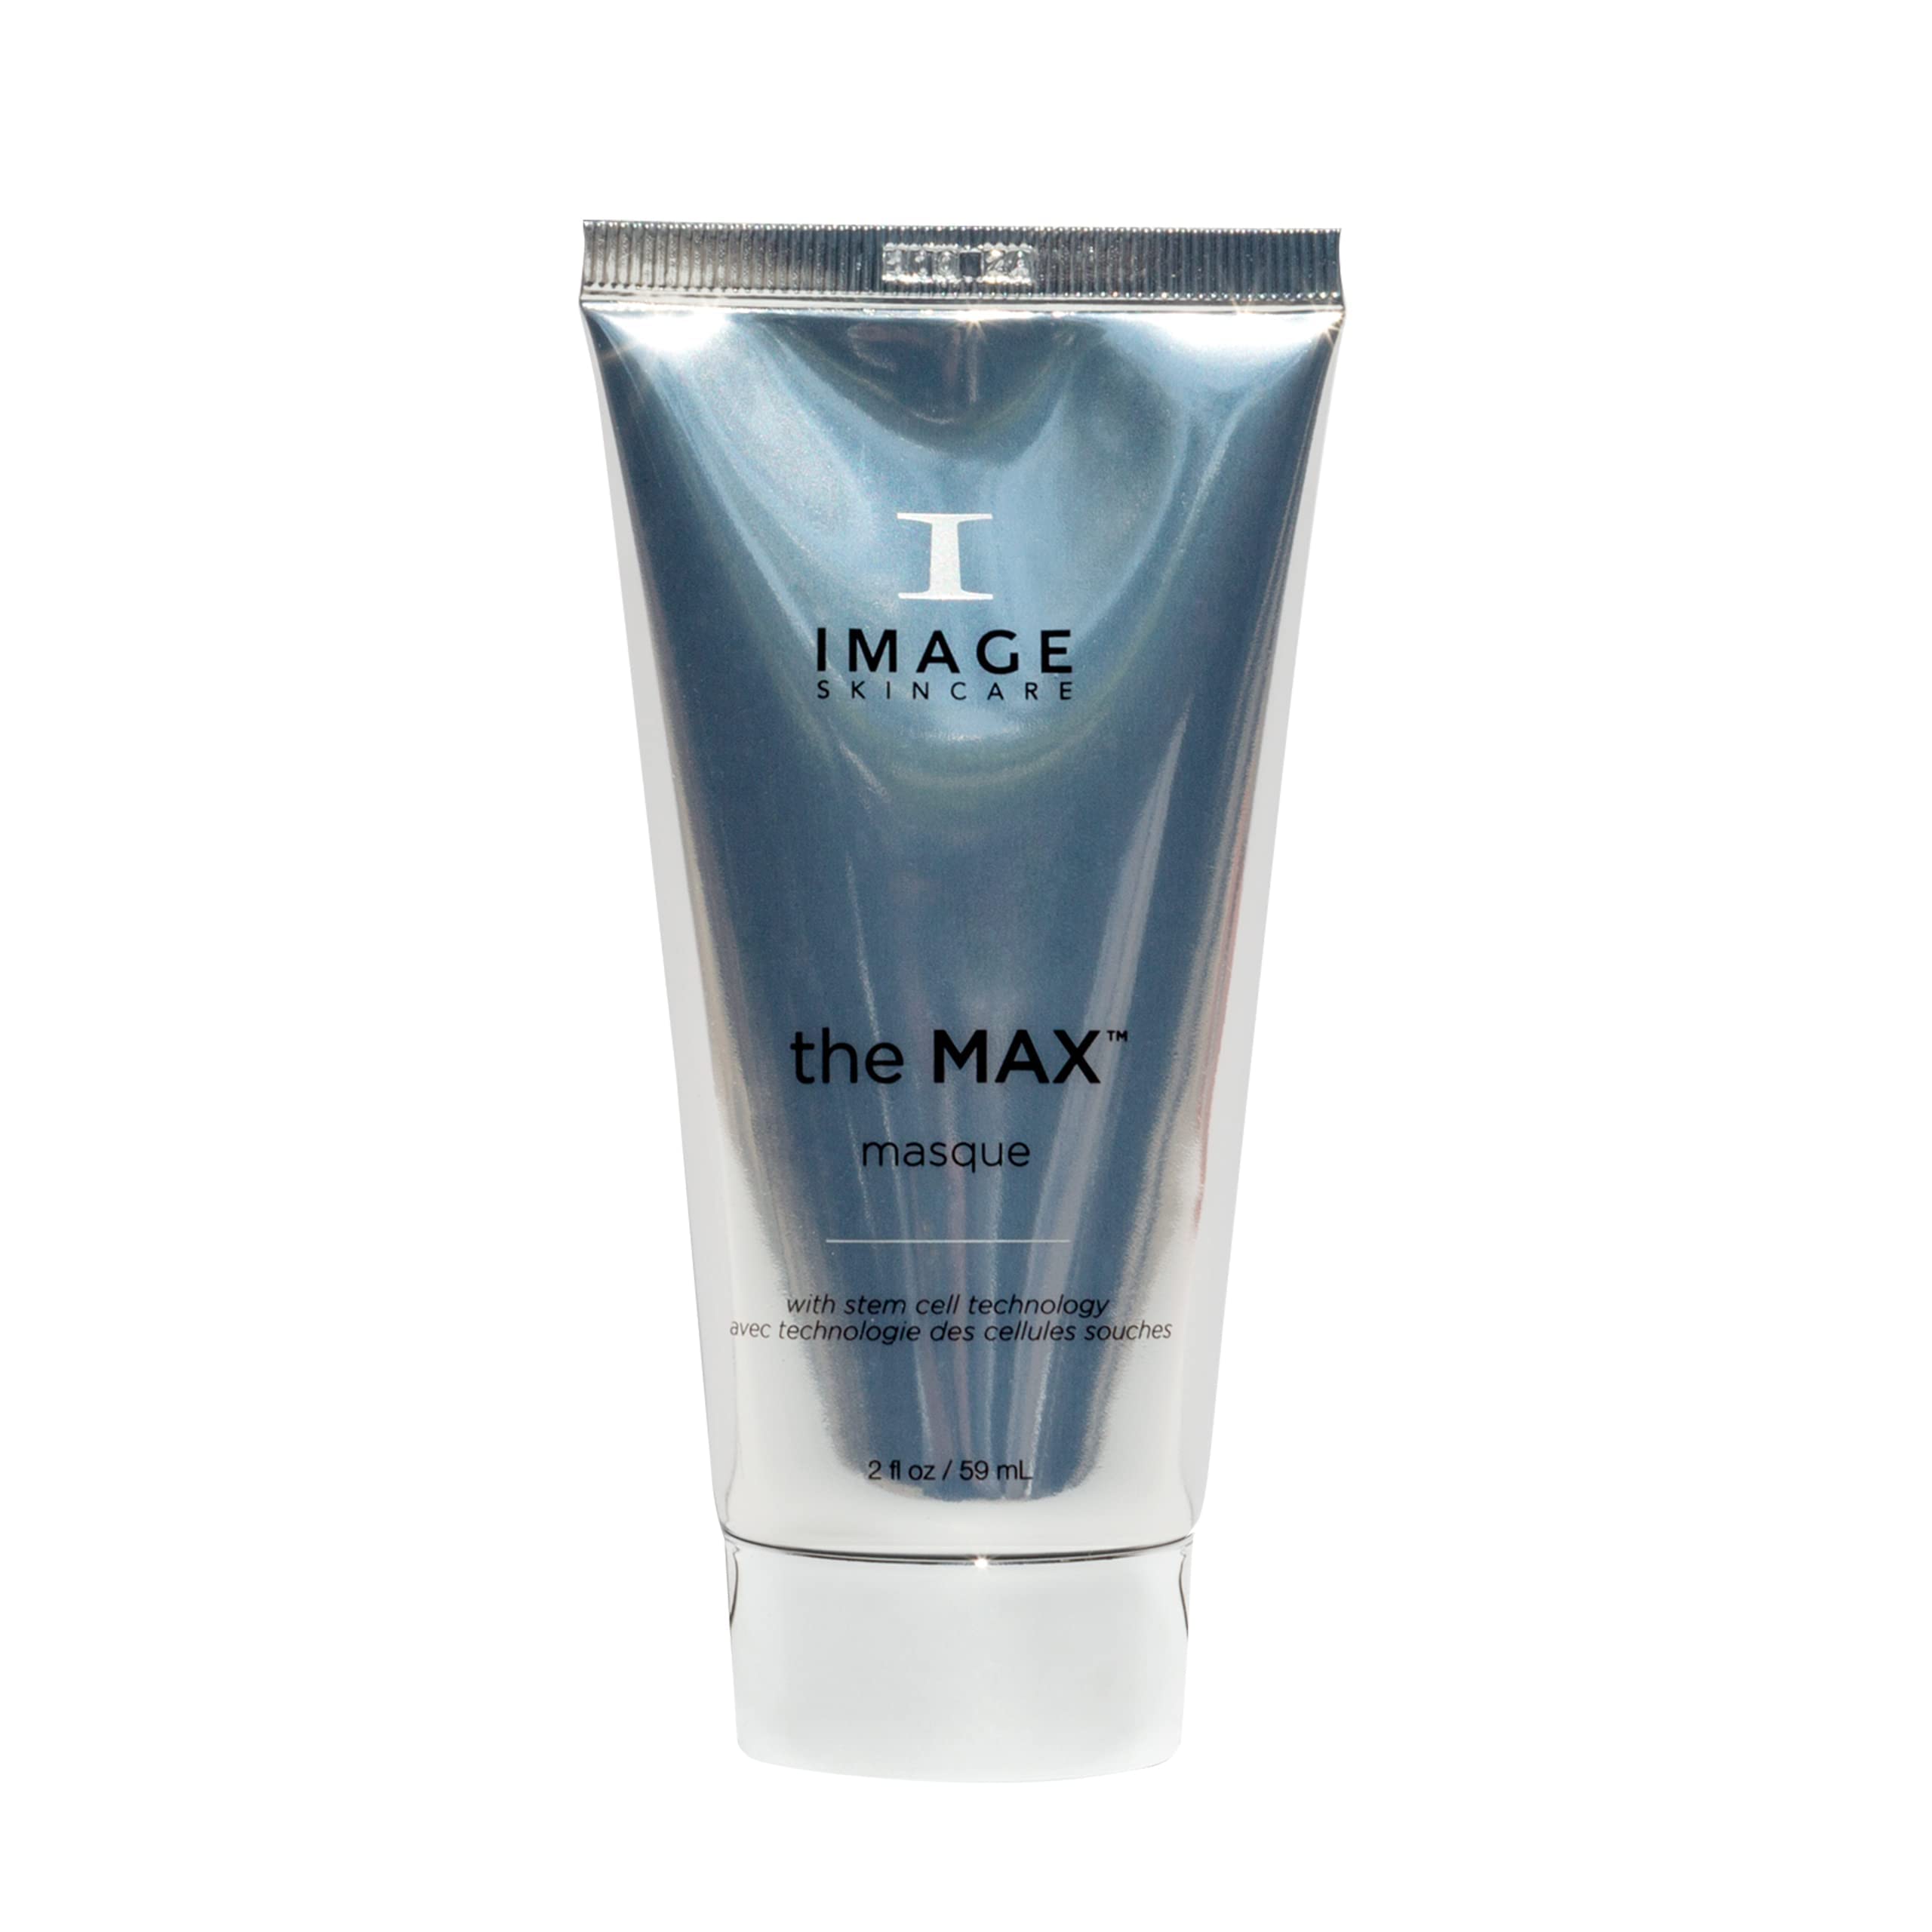 Image Skincare - the MAX Maske - 59 ml